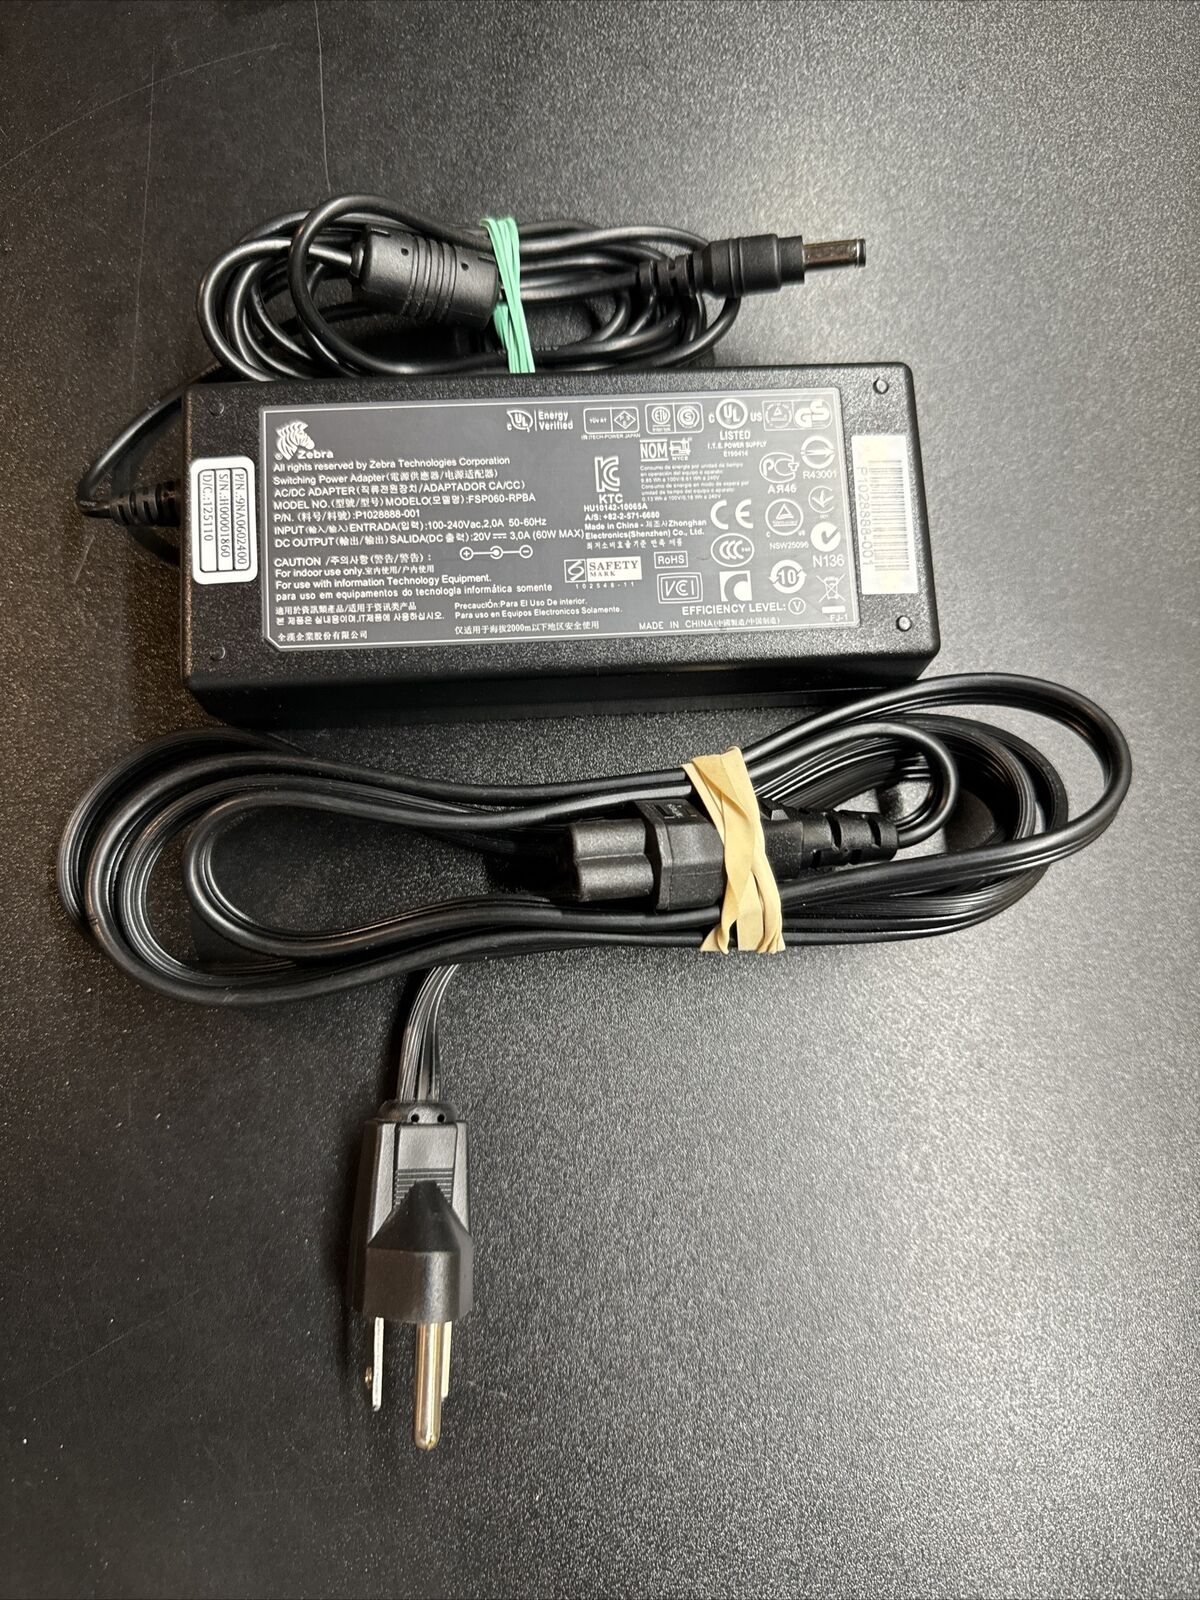 Genuine Zebra 60W 20V 3.0A AC Power Adapter Charger FSP060-RPBA P1028888-001